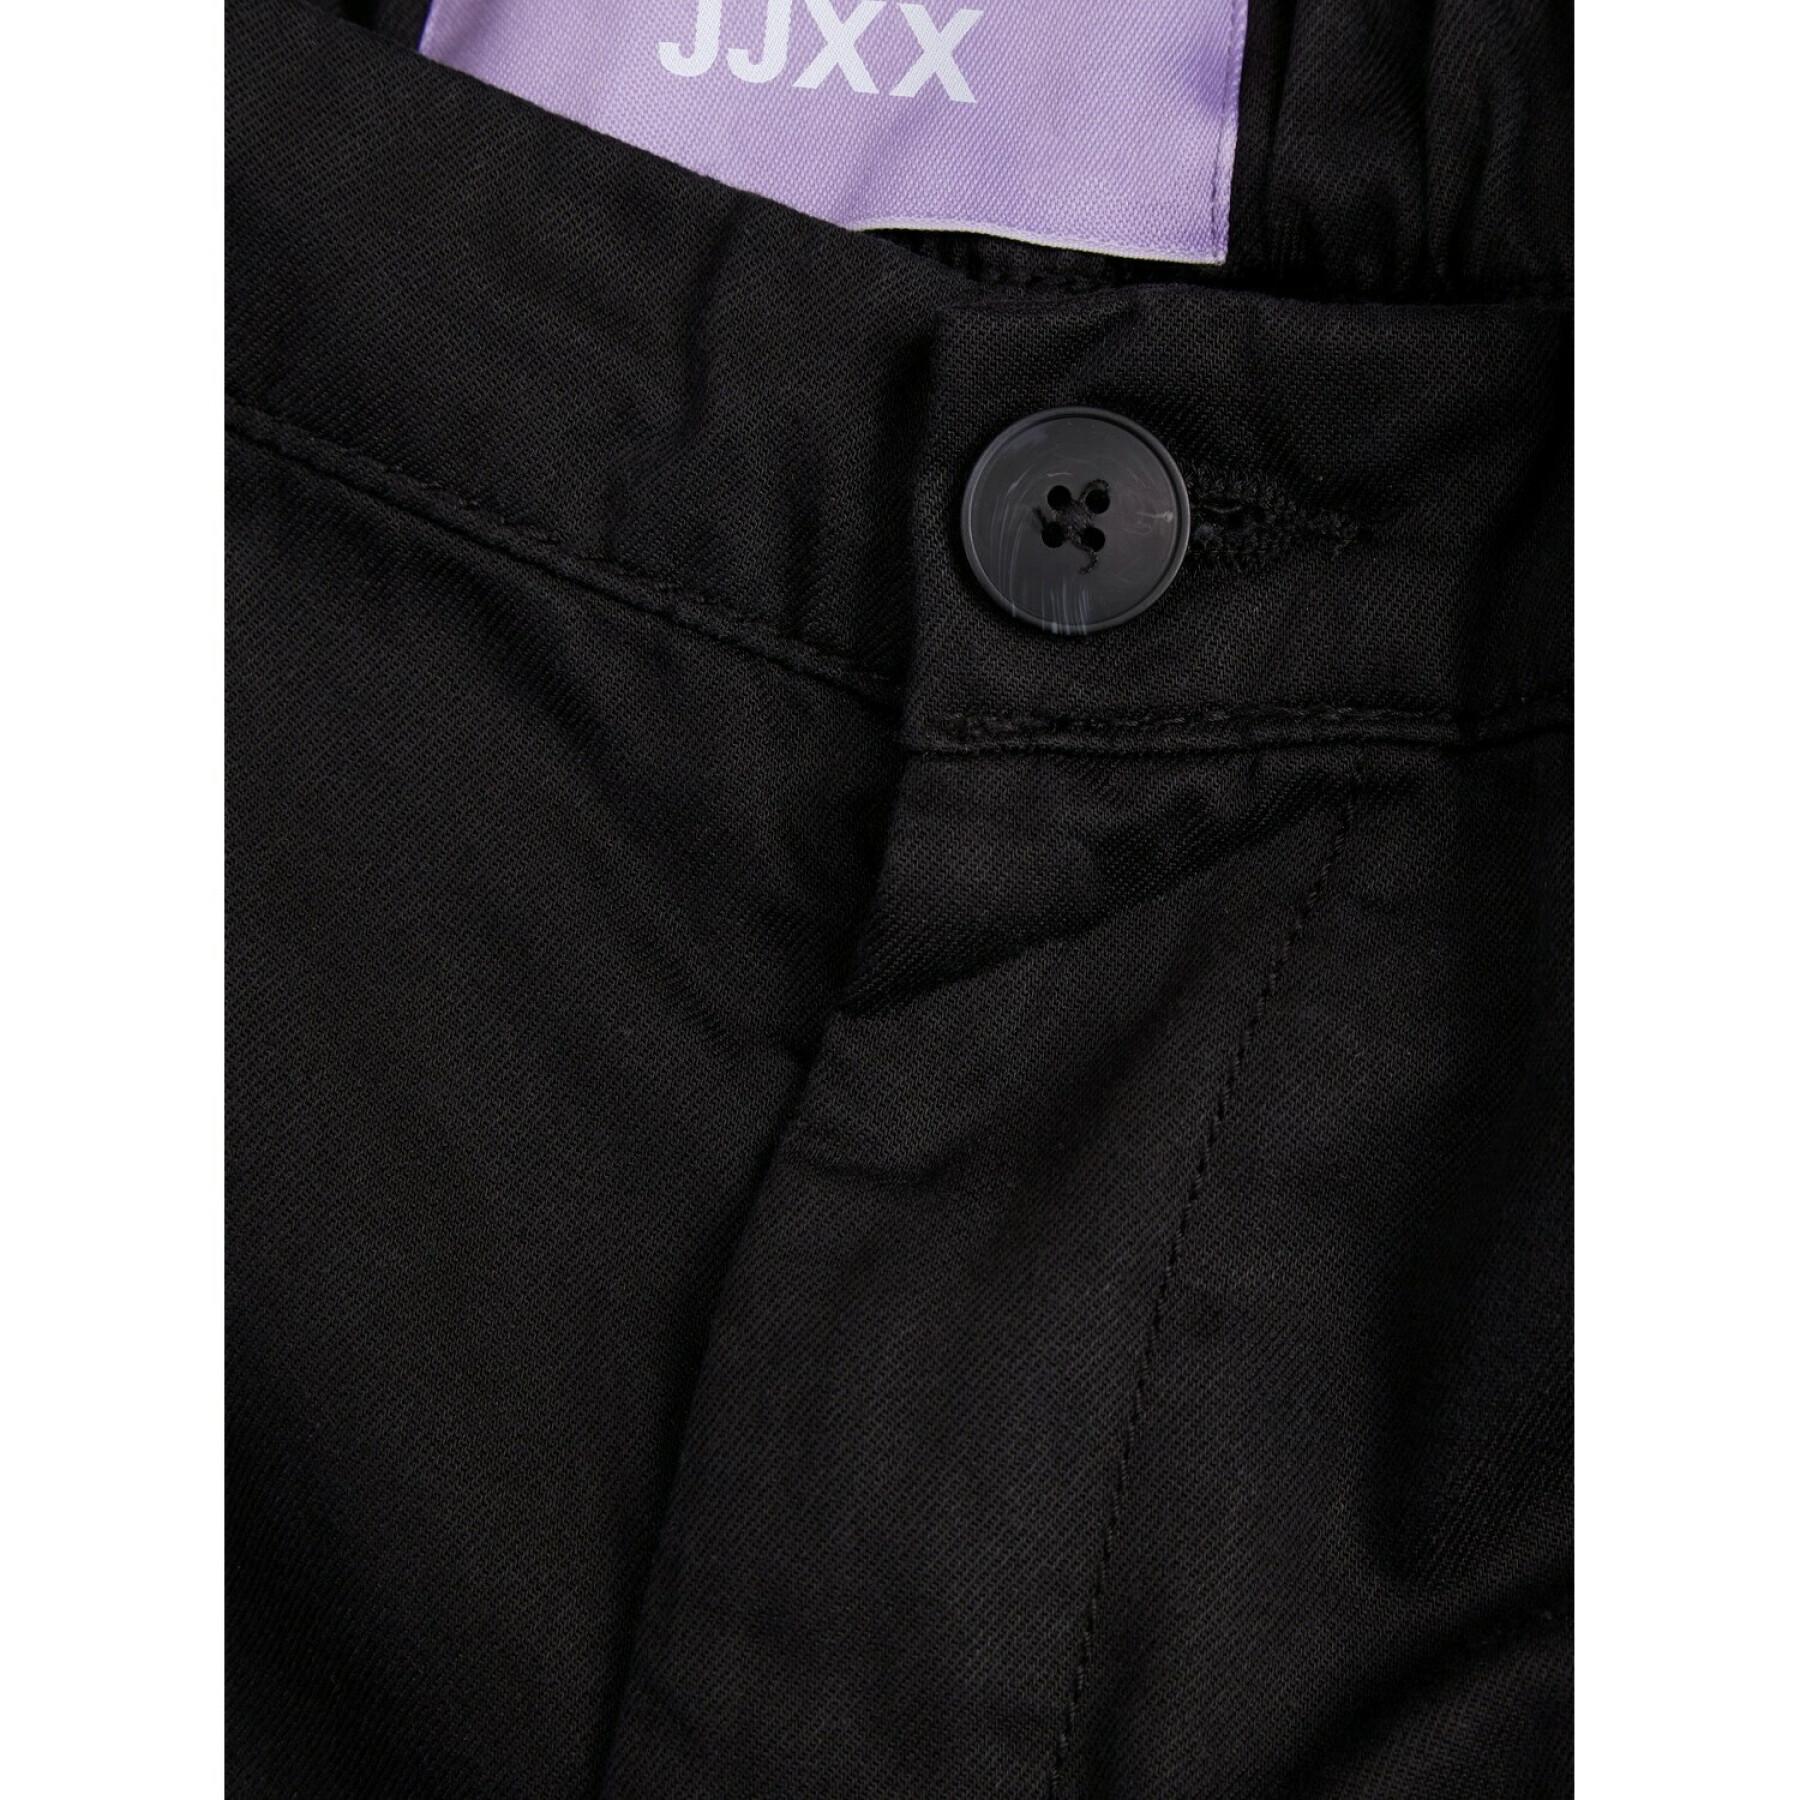 Pantaloni cargo da donna JJXX holly